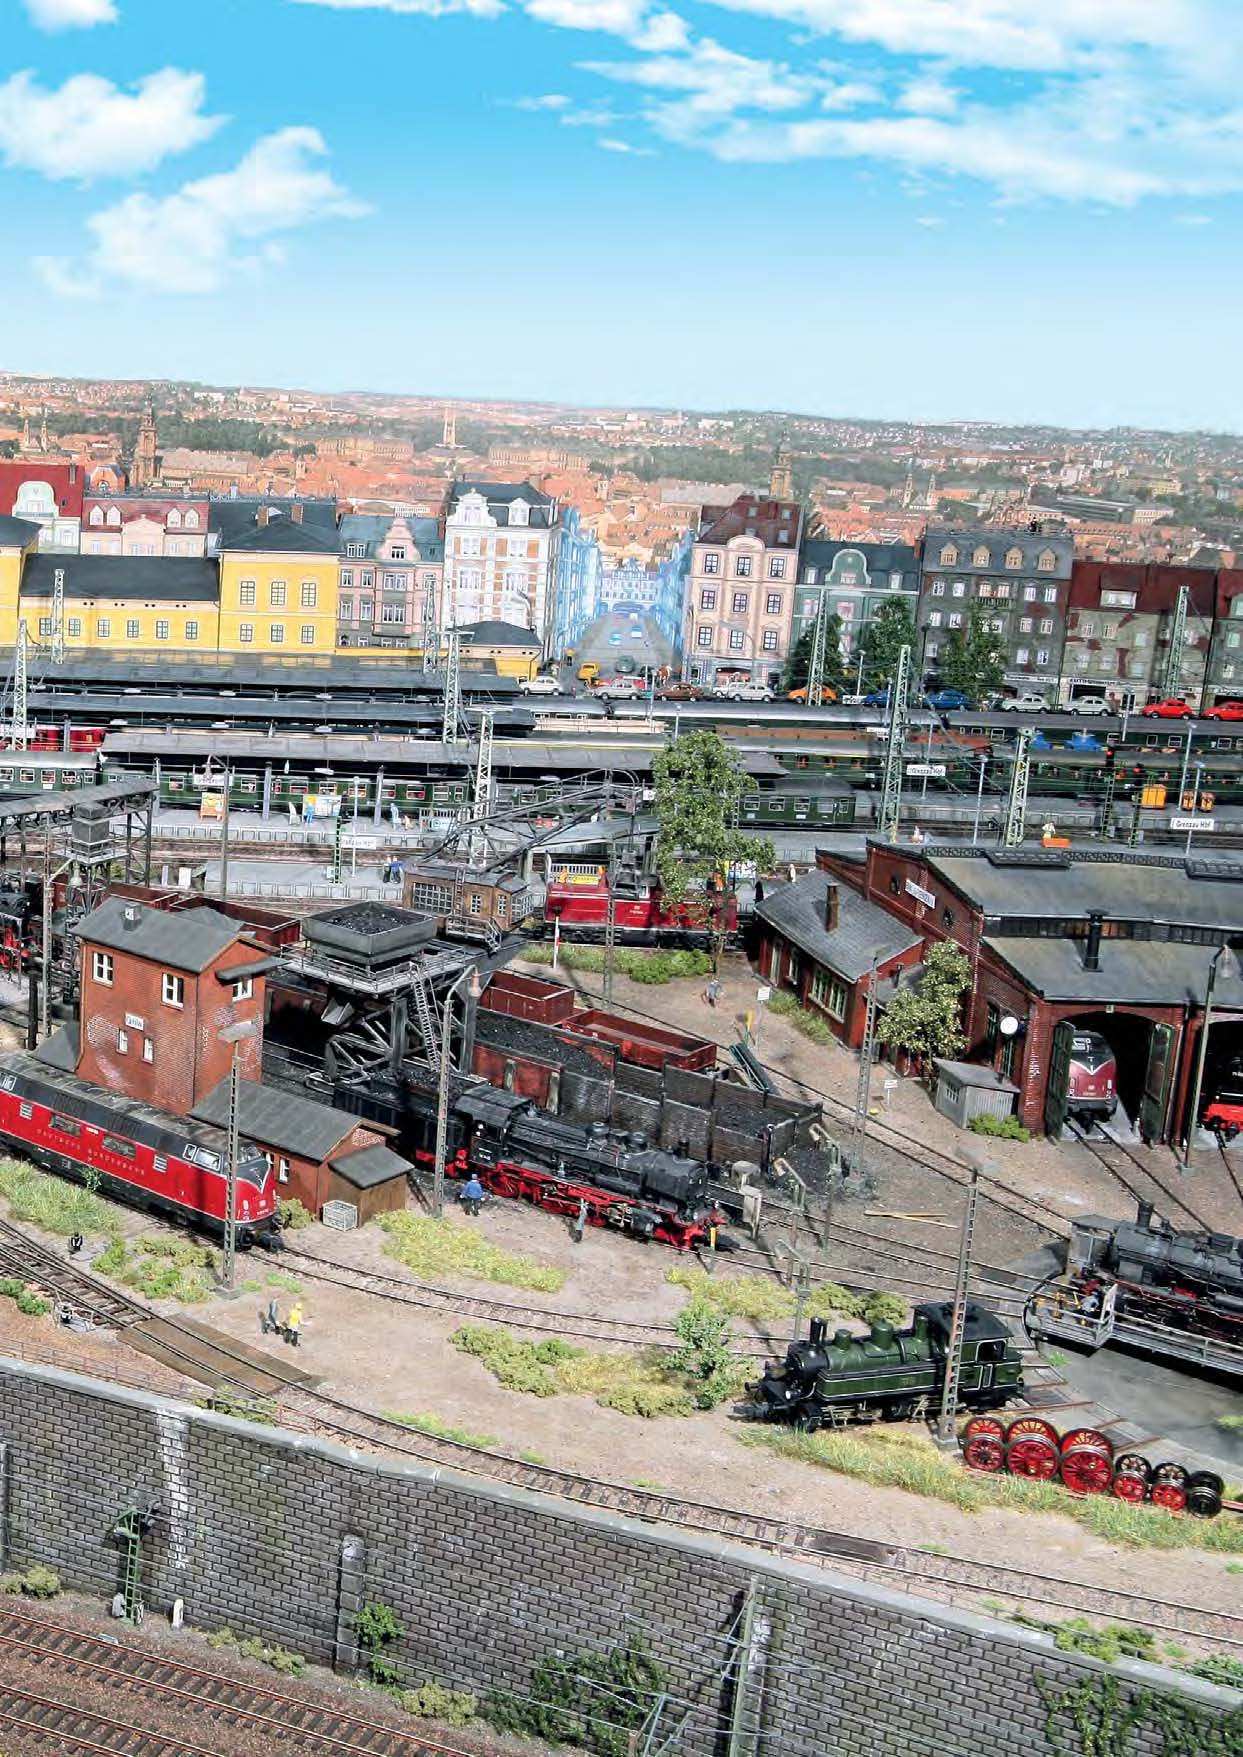 Zum Bahnhof Grenzau gehört ein großes Bahnbetriebswerk, in dem Dampf- und Dieselloks versorgt werden können.